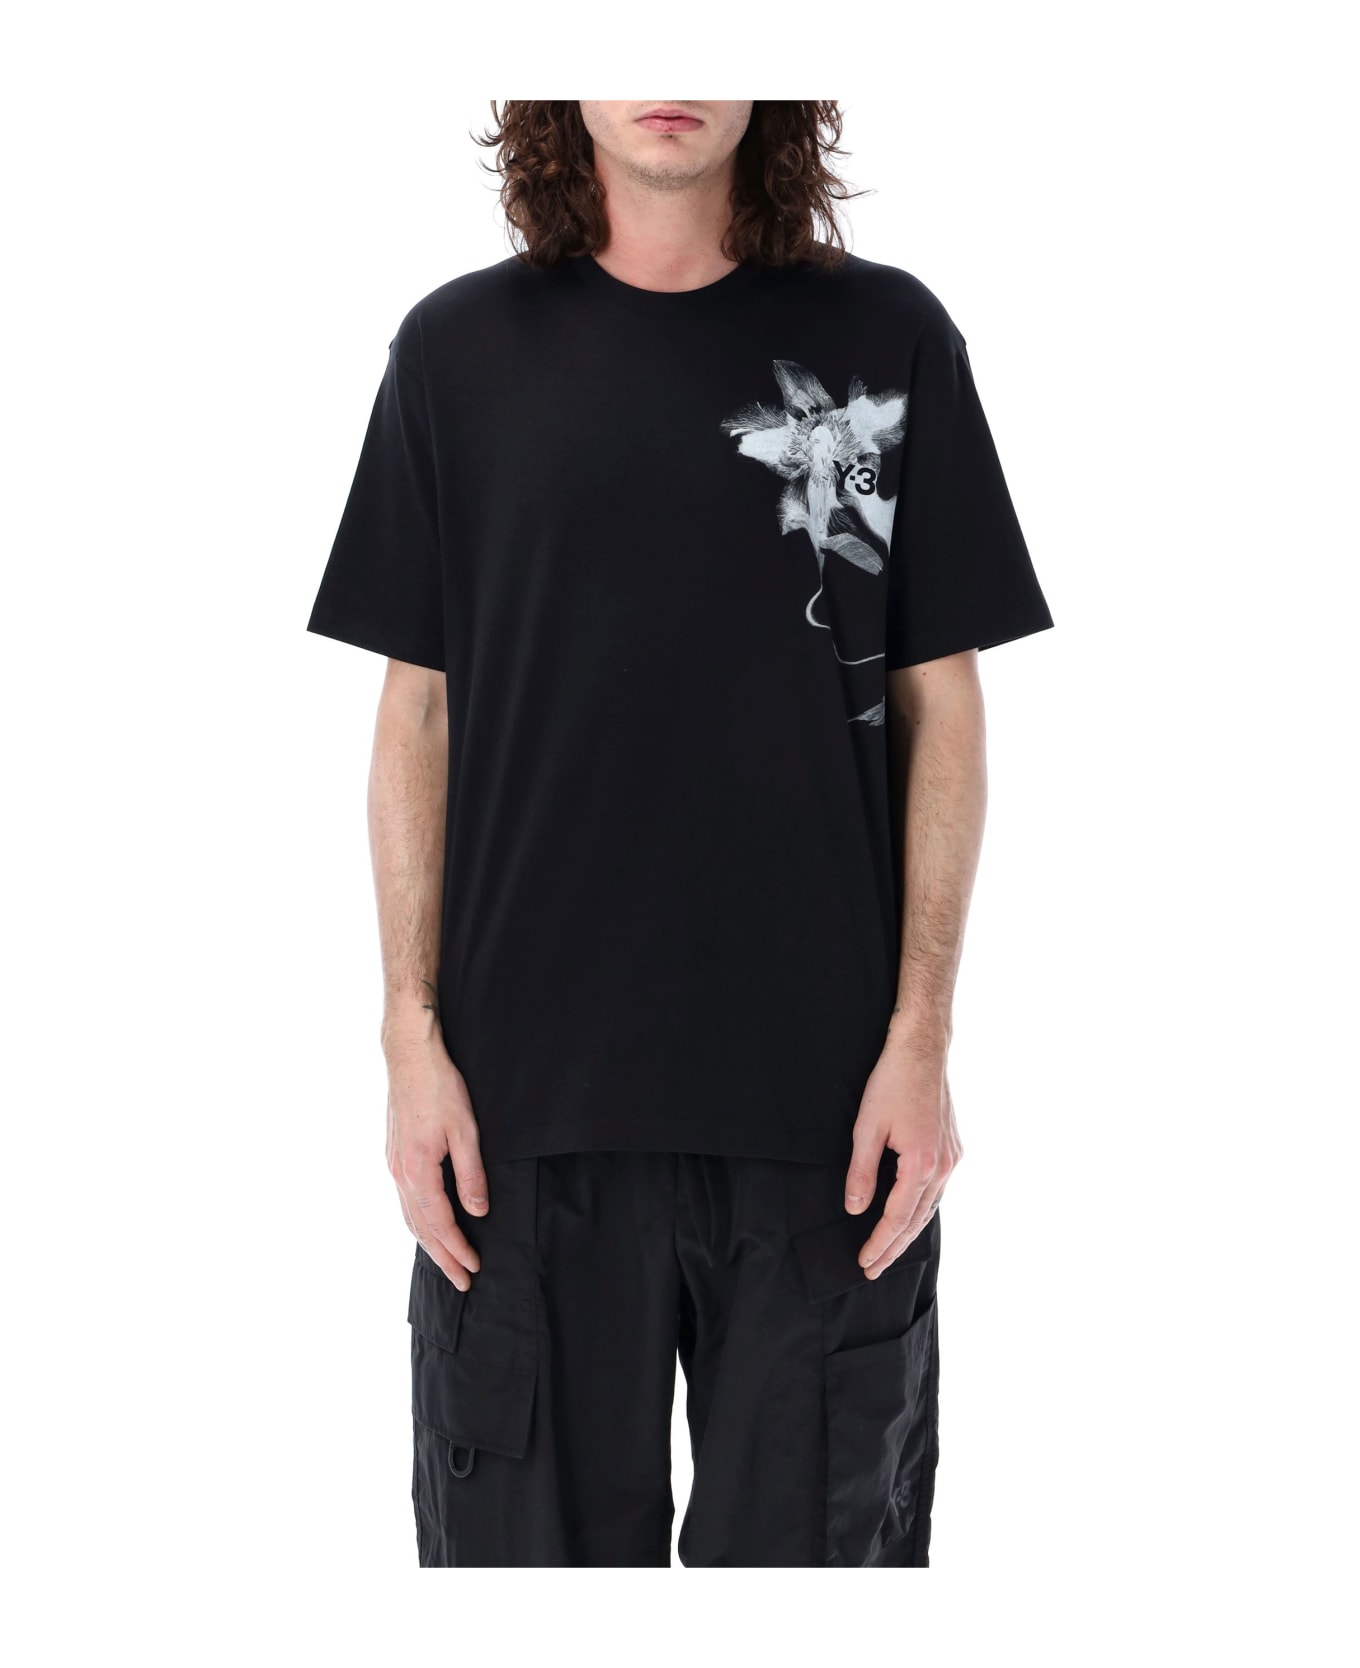 Y-3 Graphic Print T-shirt - BLACK